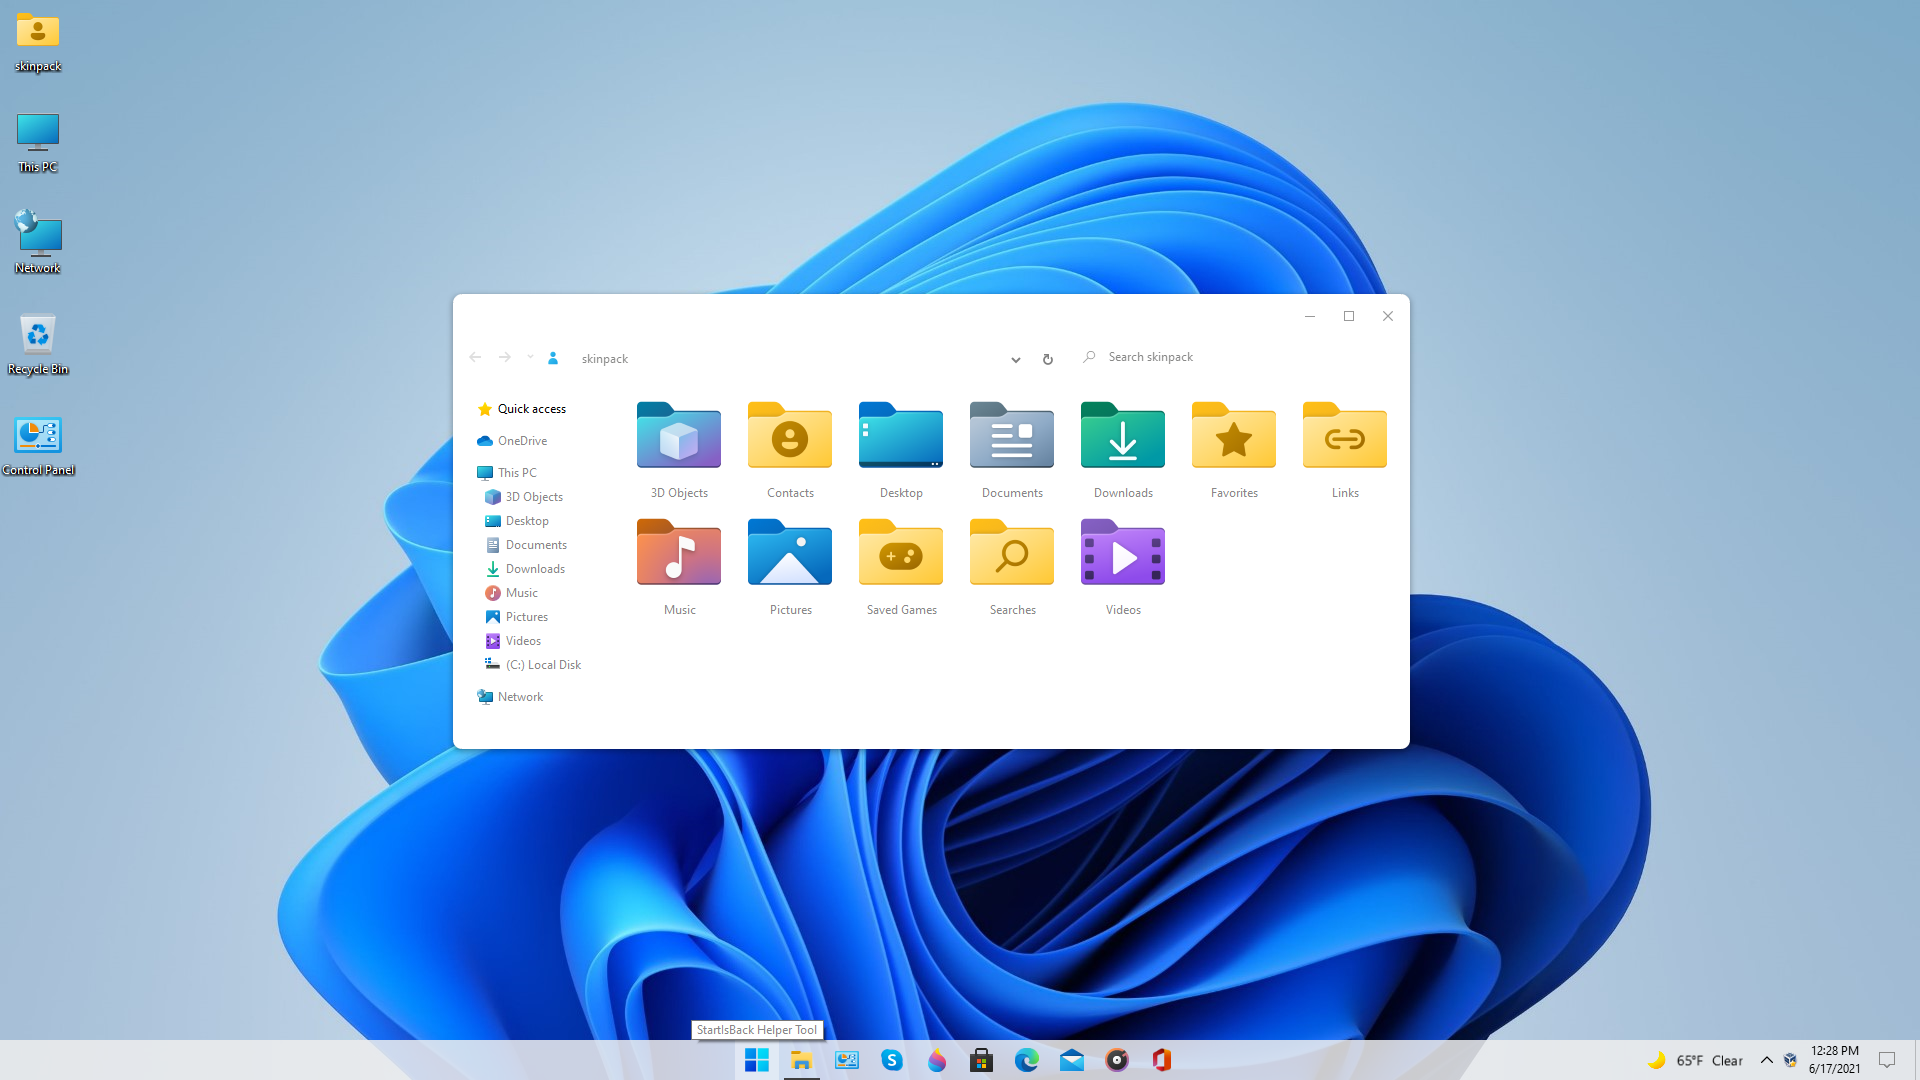 Hãy cập nhật gói SkinPack cho Windows 11 để làm cho máy tính của bạn trở nên đẹp một cách đáng kinh ngạc. Gói SkinPack là một công cụ tuyệt vời để làm tăng sự đa dạng và thú vị cho giao diện máy tính của bạn, tạo ra một trải nghiệm tuyệt vời mỗi khi sử dụng máy tính. Hãy cài đặt SkinPack ngay để khám phá thế giới mới cho giao diện Windows 11 của bạn.